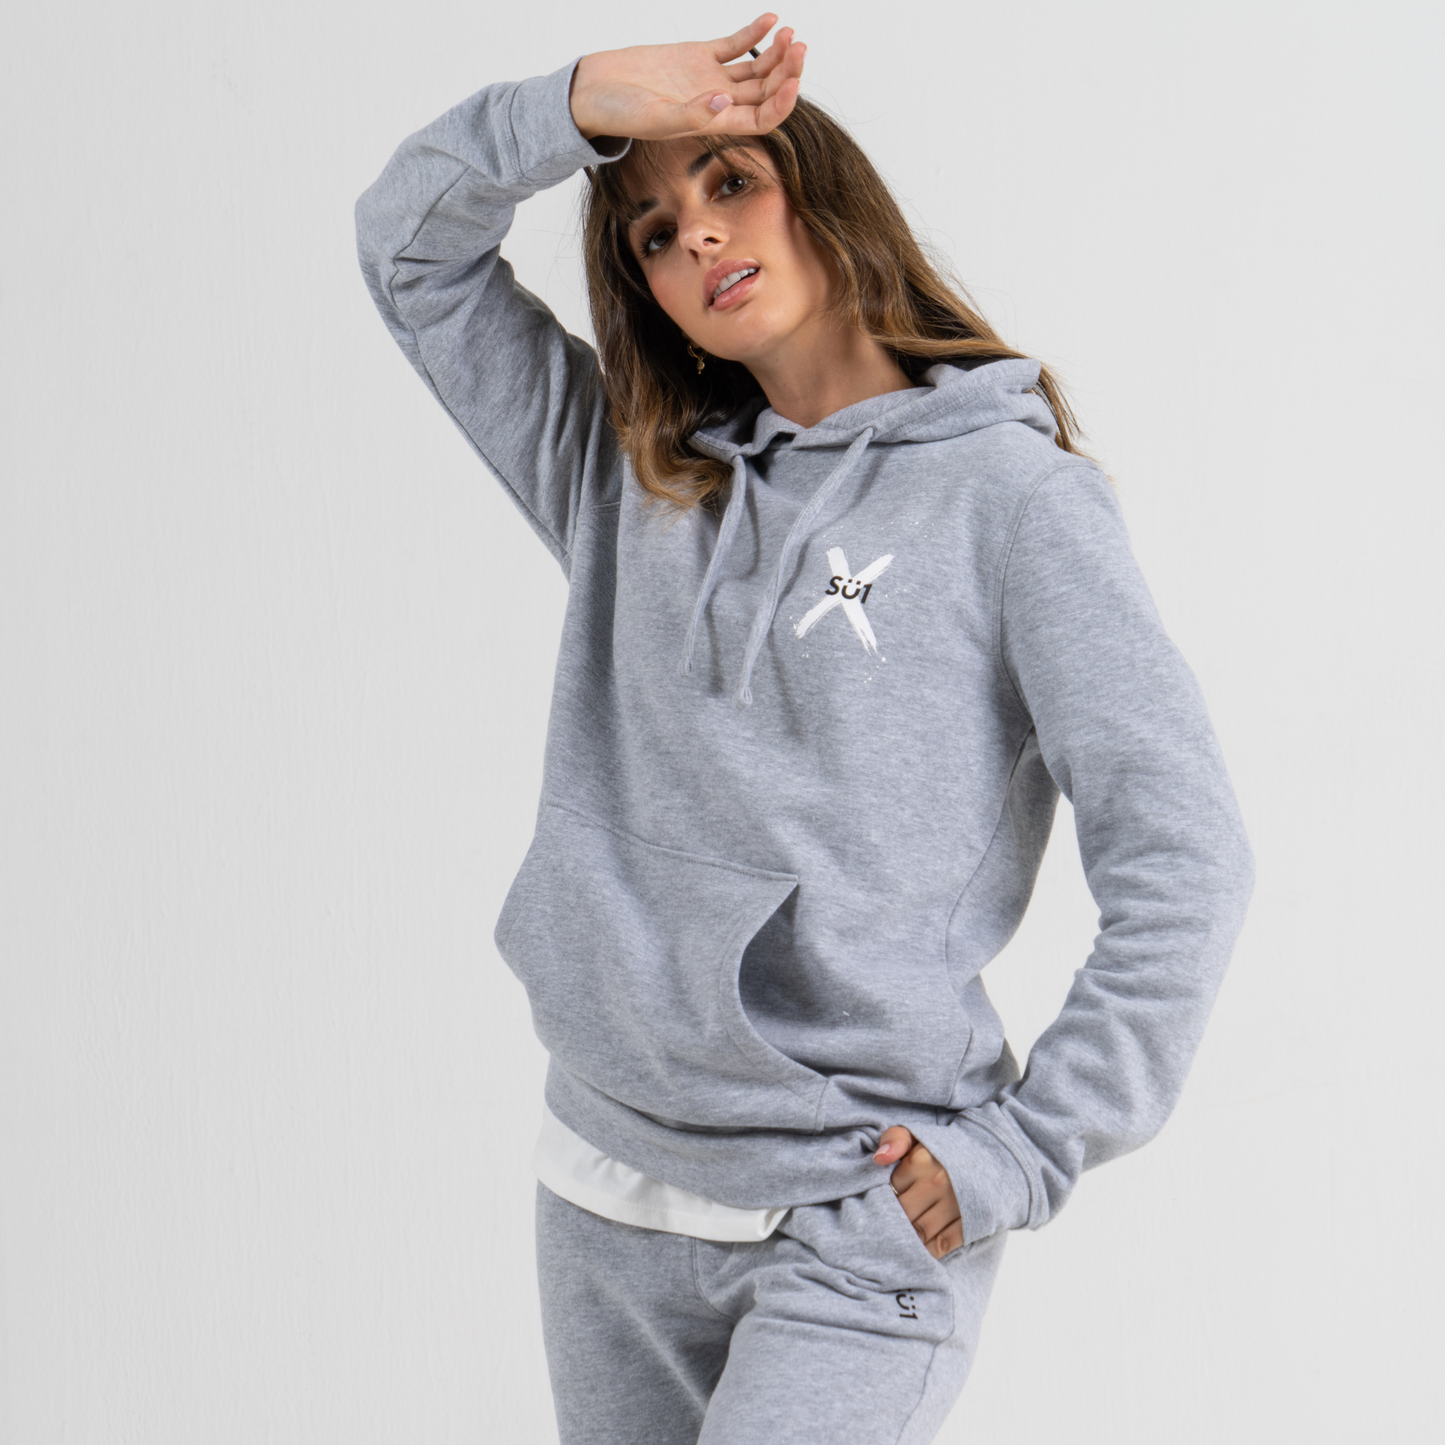 Woman wearing grey hoodie SU1 clothing brand